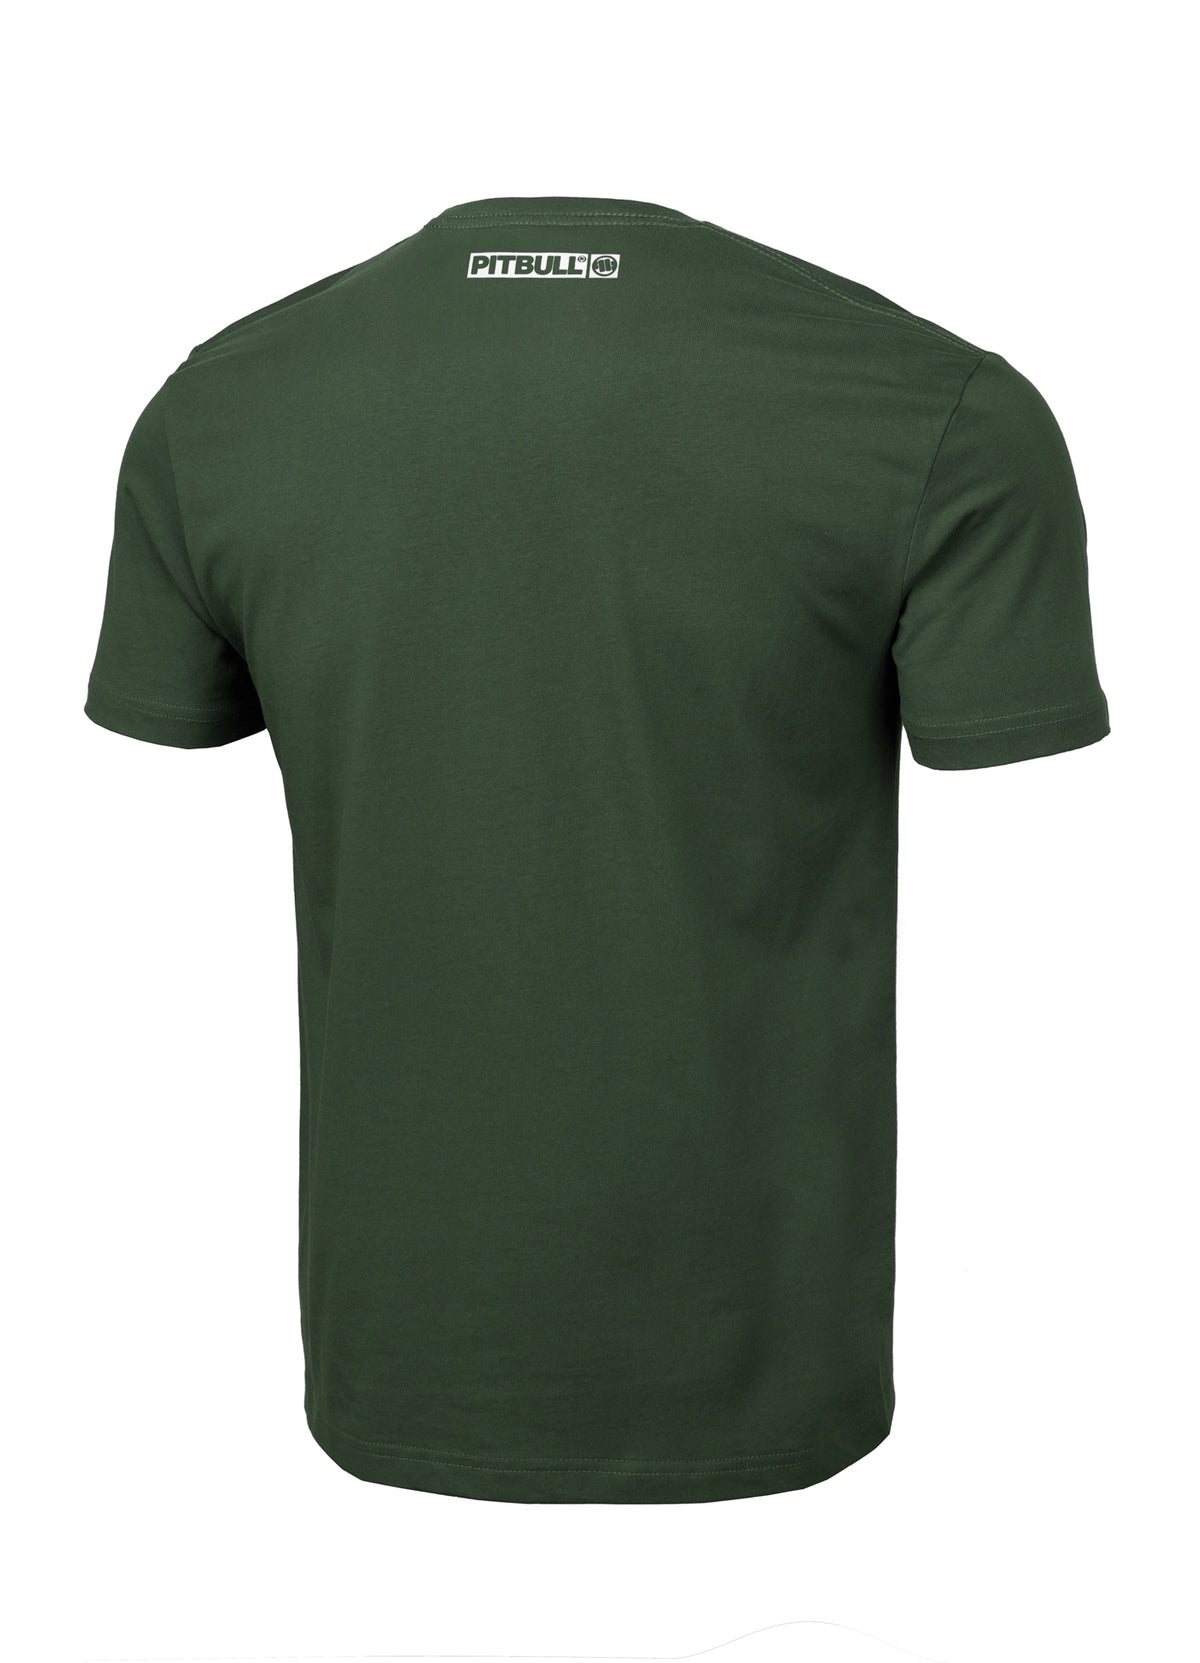 HILLTOP Lightweight Grassy Green T-shirt